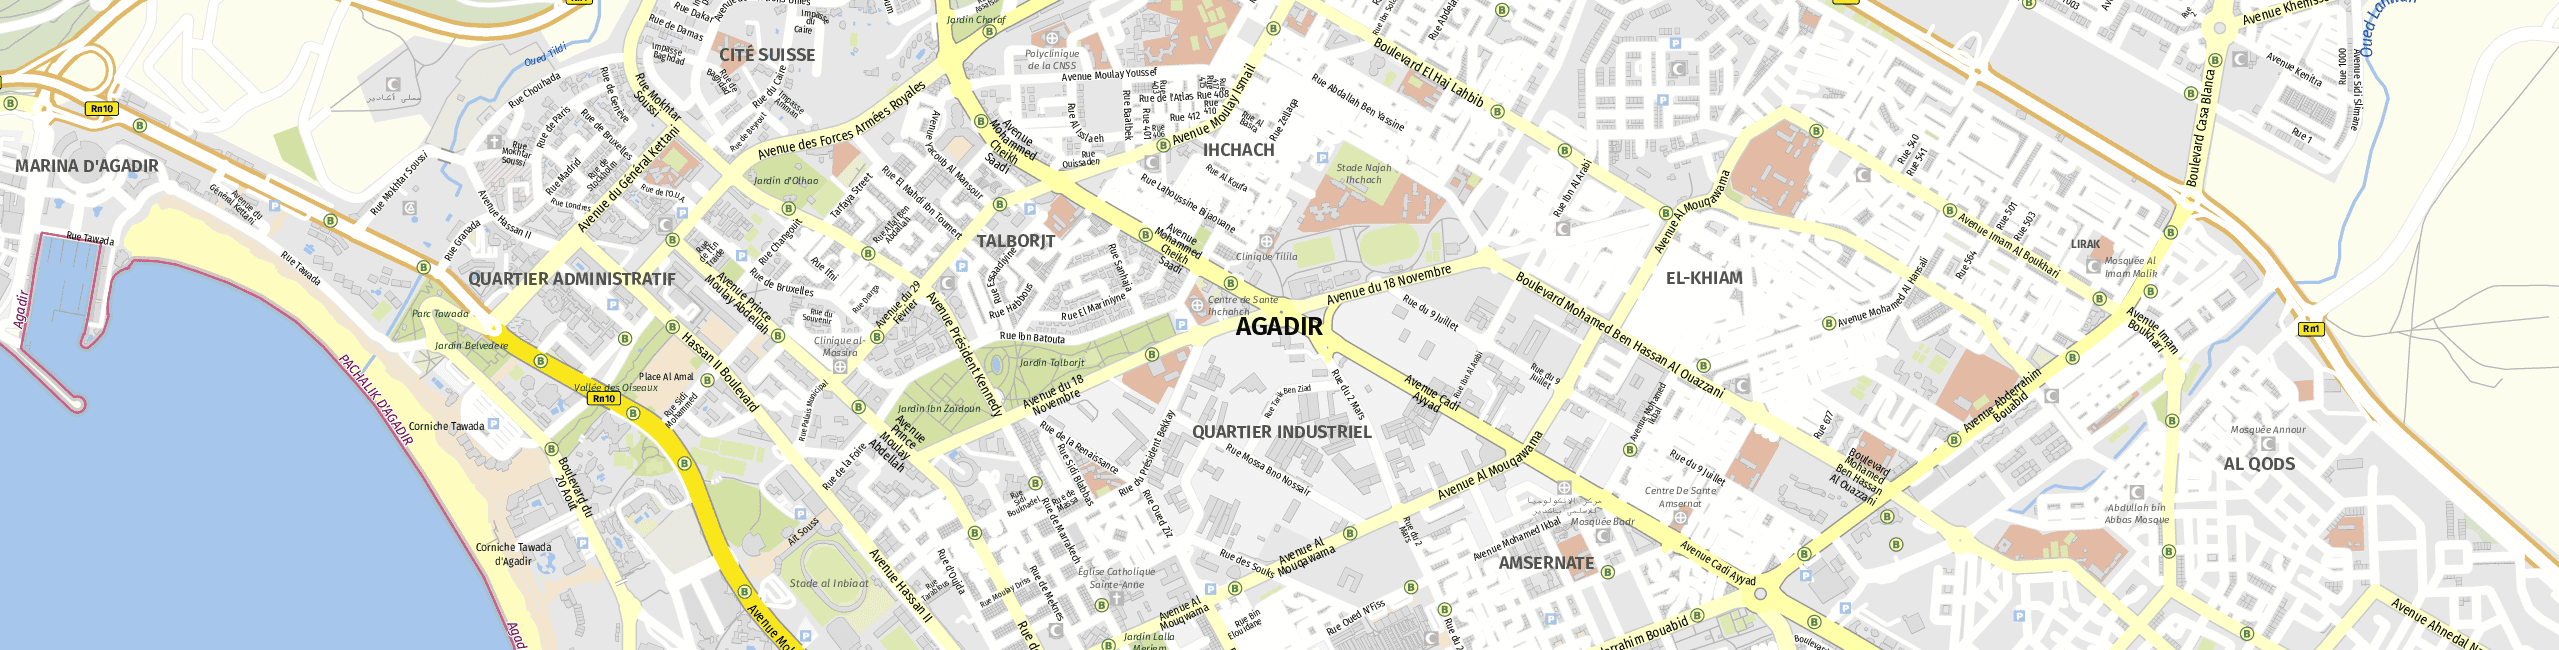 Stadtplan Agadir zum Downloaden.